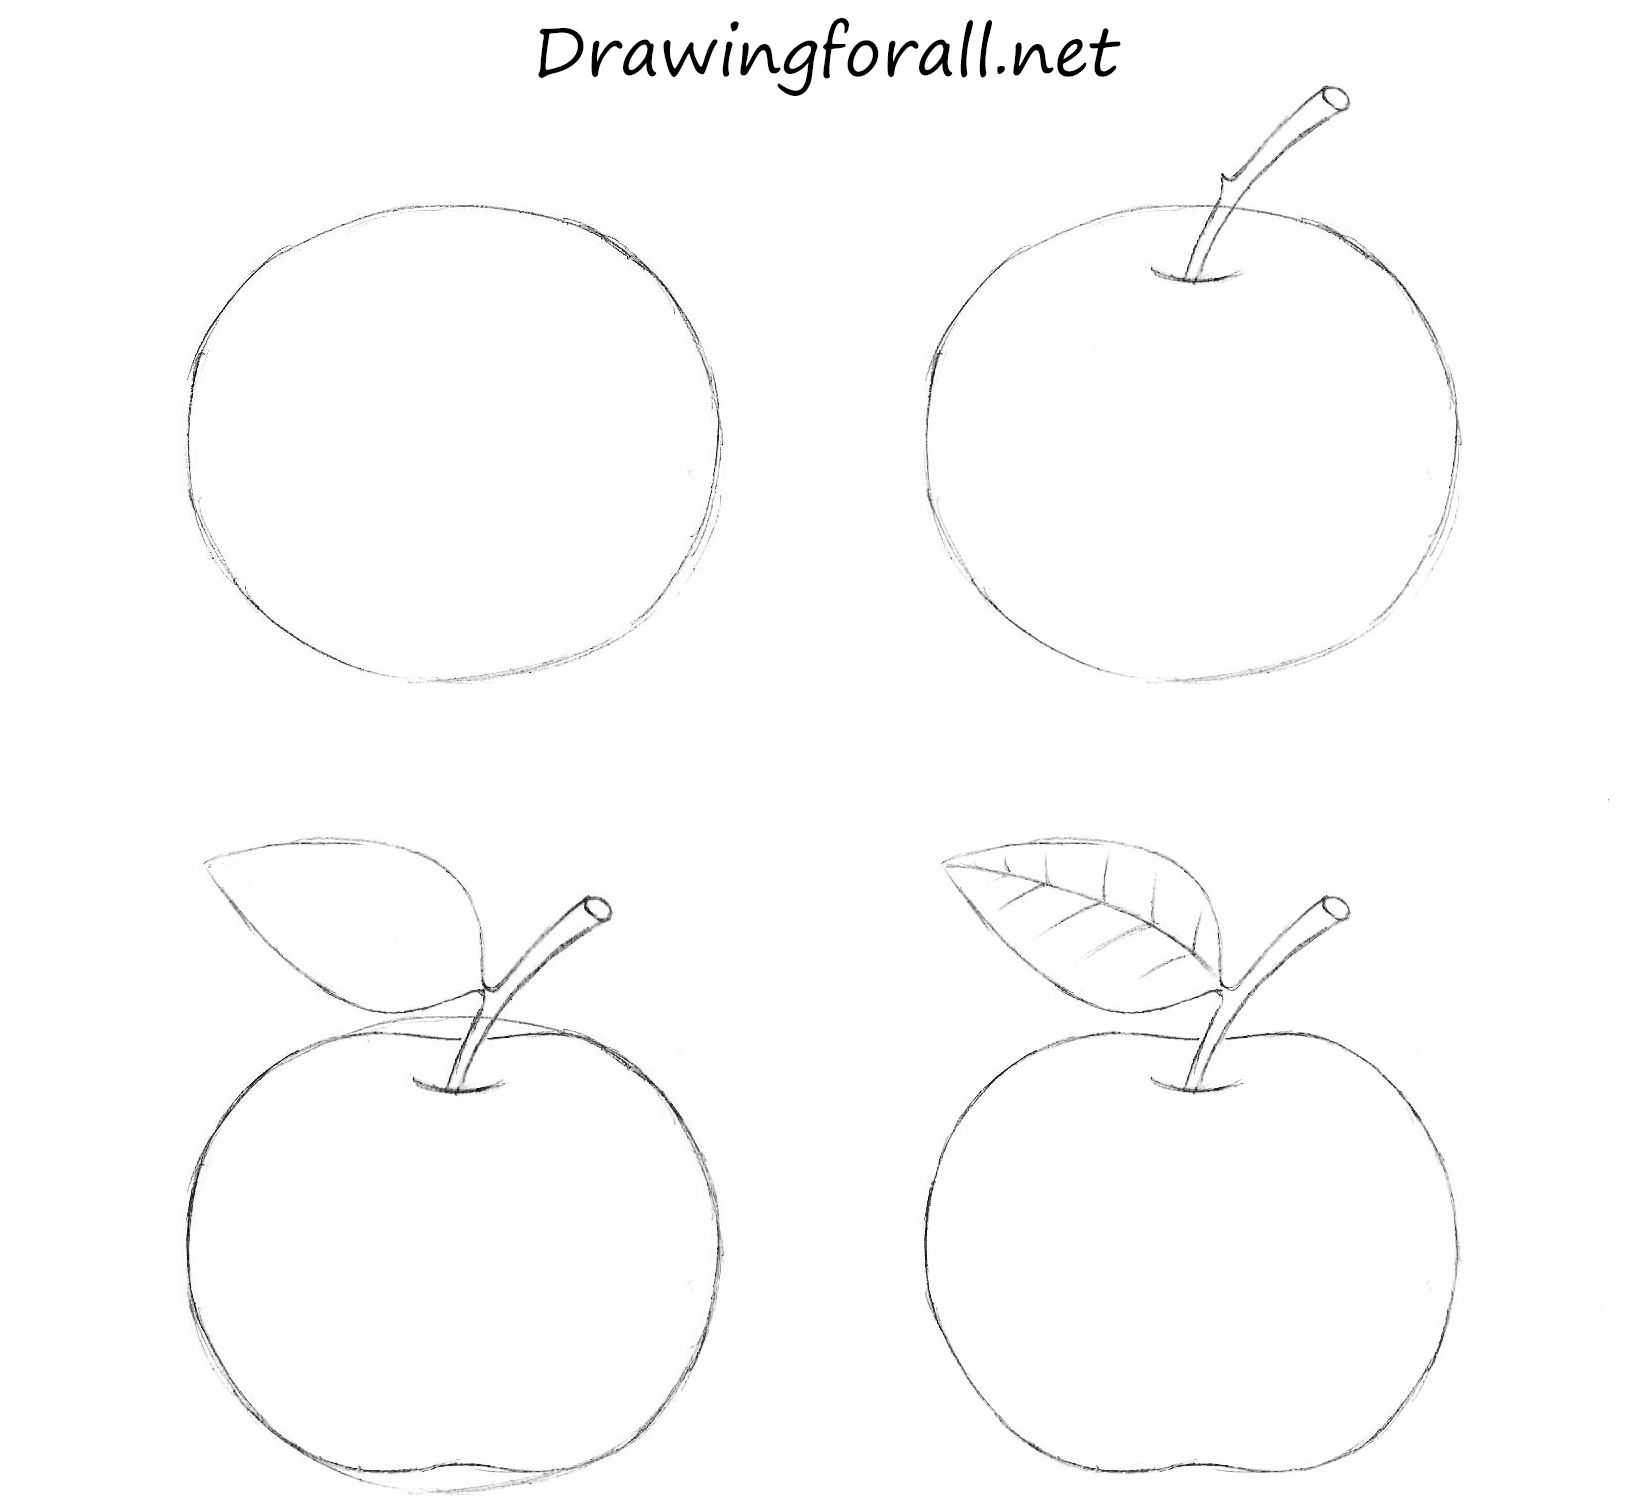 Яблоко рисунок для детей карандашом. как рисовать поэтапно черно-белые, цветные рисунки, на прозрачном фоне